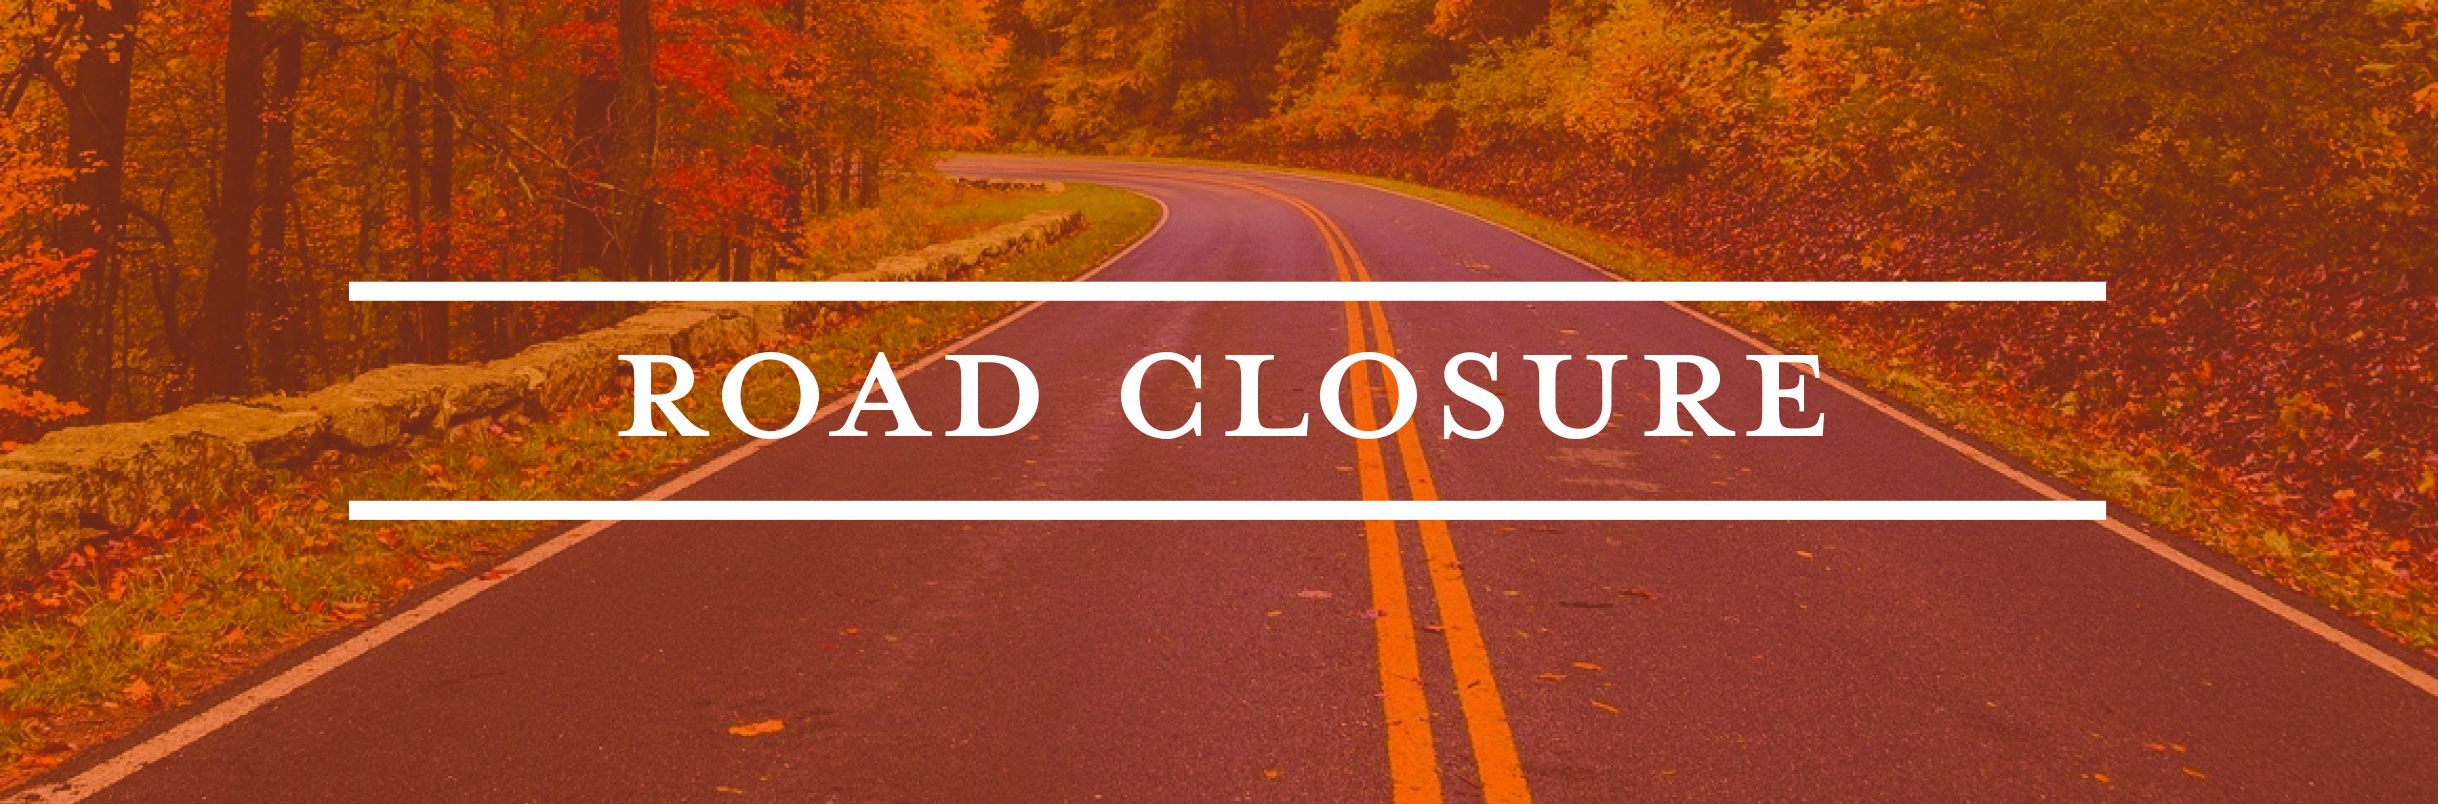 road closure text 